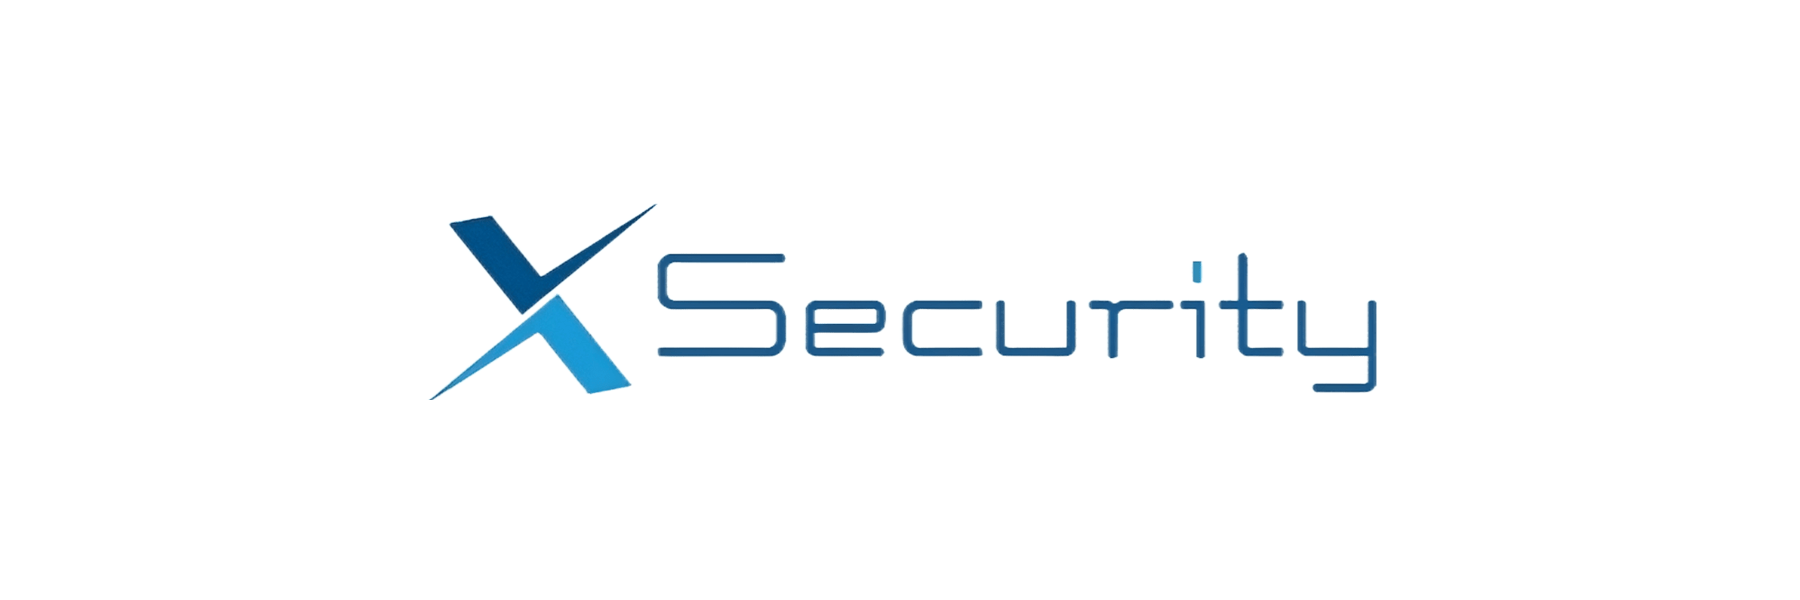 X-Security ist eine Marke für Videoüberwachung...